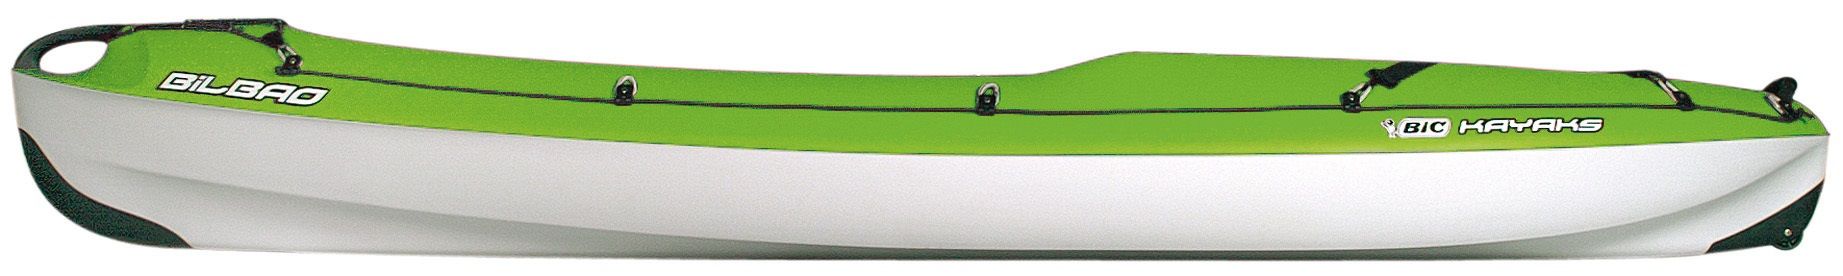 Pack kayak monoplace sit on top bilbao + 1 pagaie + 1 siège